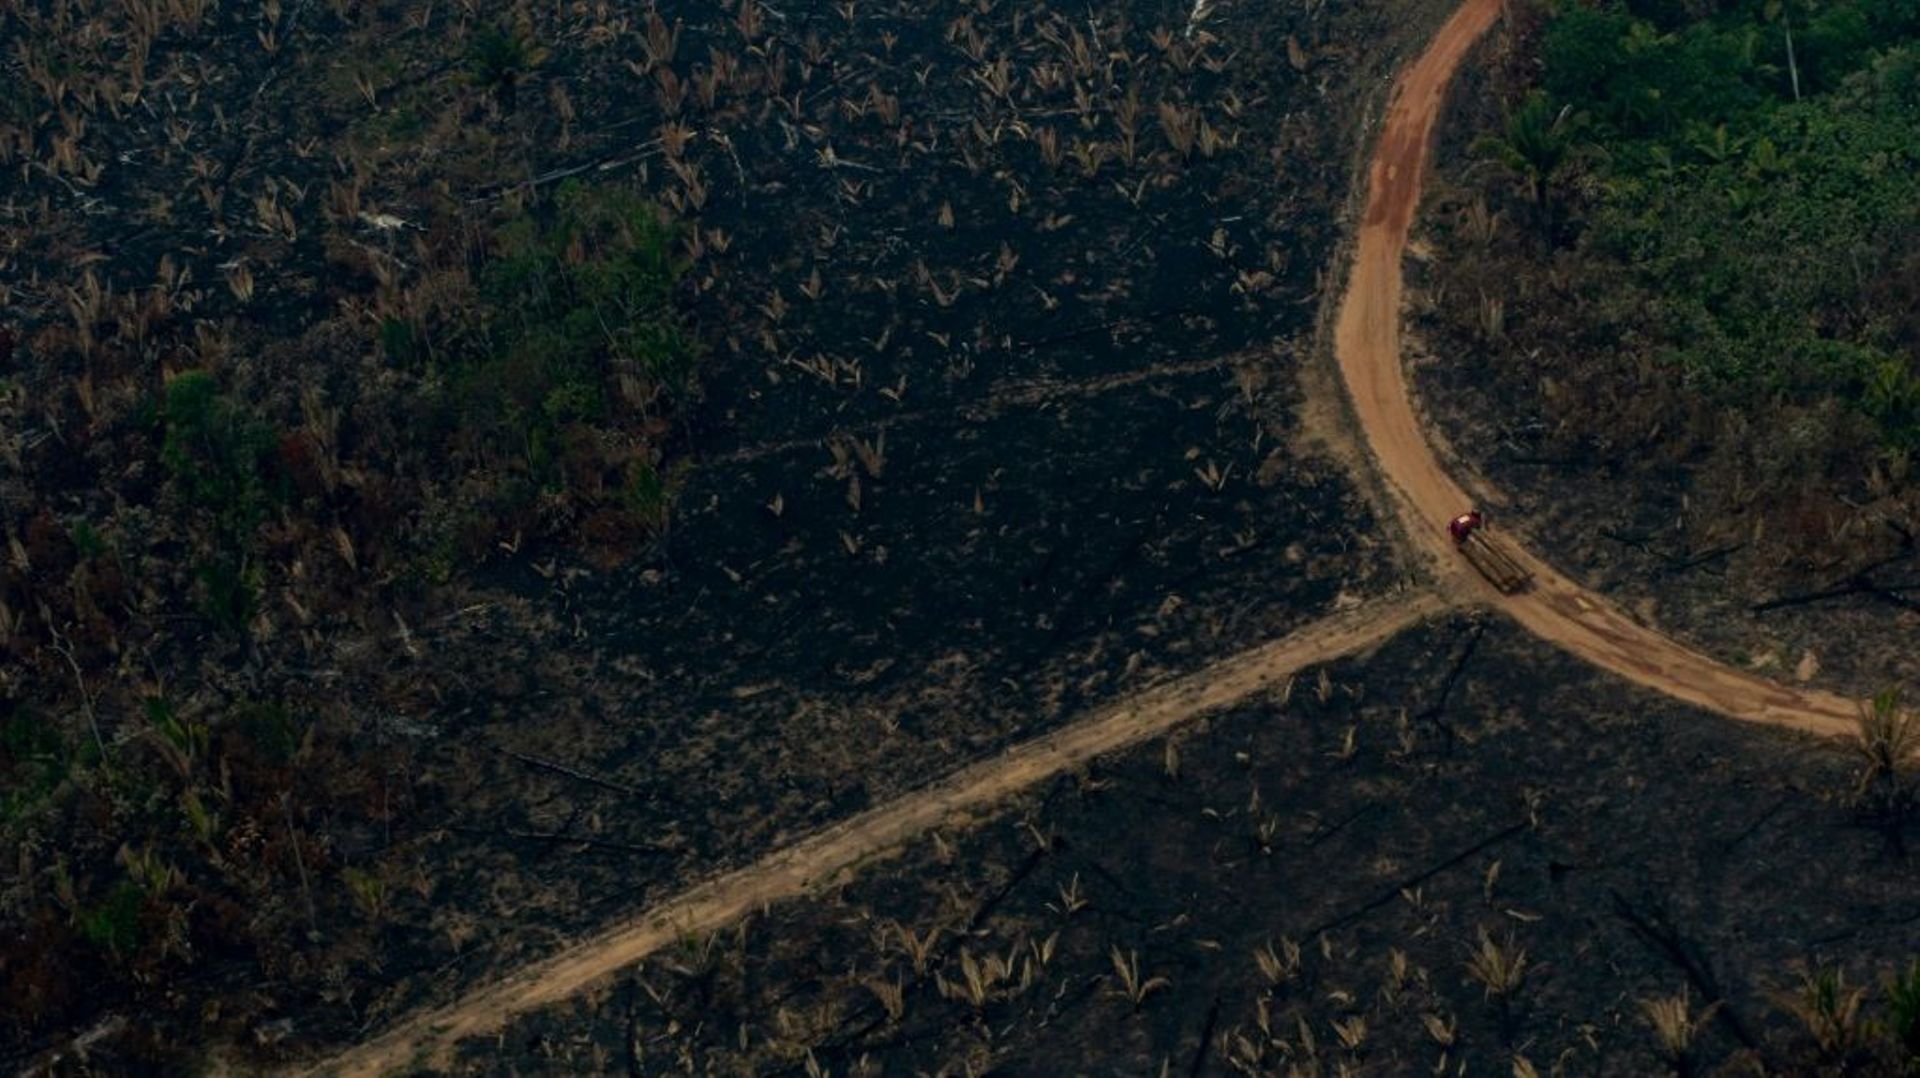 Vue aérienne d'un camion transportant des troncs d'arbre dans une zone de déforestation à Boca do Acre au Brésil, le 24 août 2019